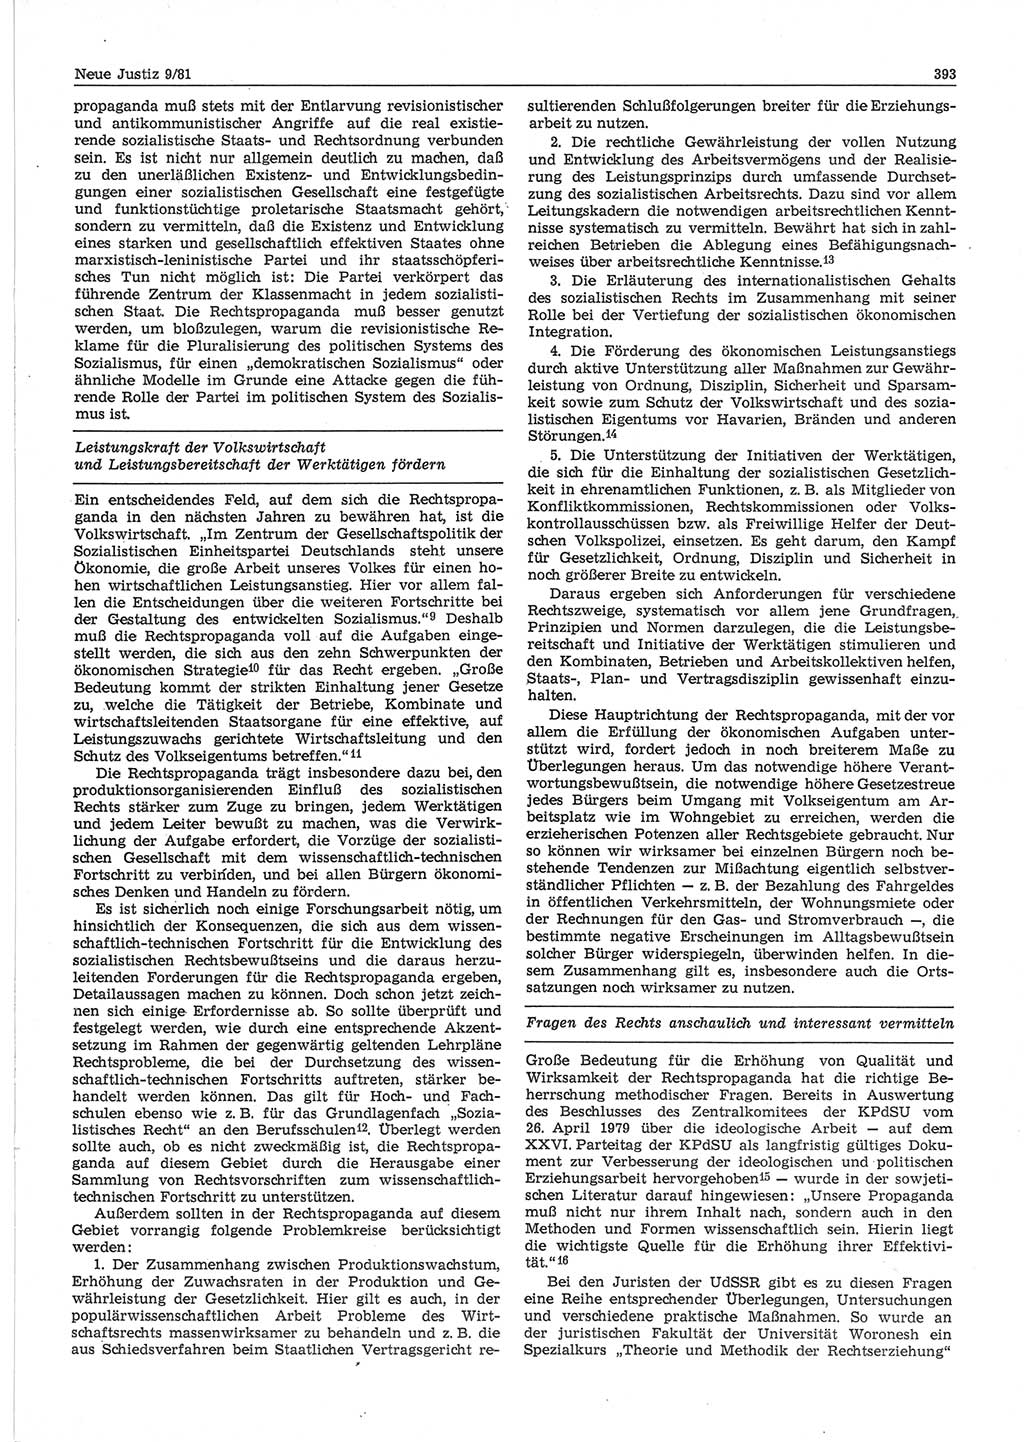 Neue Justiz (NJ), Zeitschrift für sozialistisches Recht und Gesetzlichkeit [Deutsche Demokratische Republik (DDR)], 35. Jahrgang 1981, Seite 393 (NJ DDR 1981, S. 393)